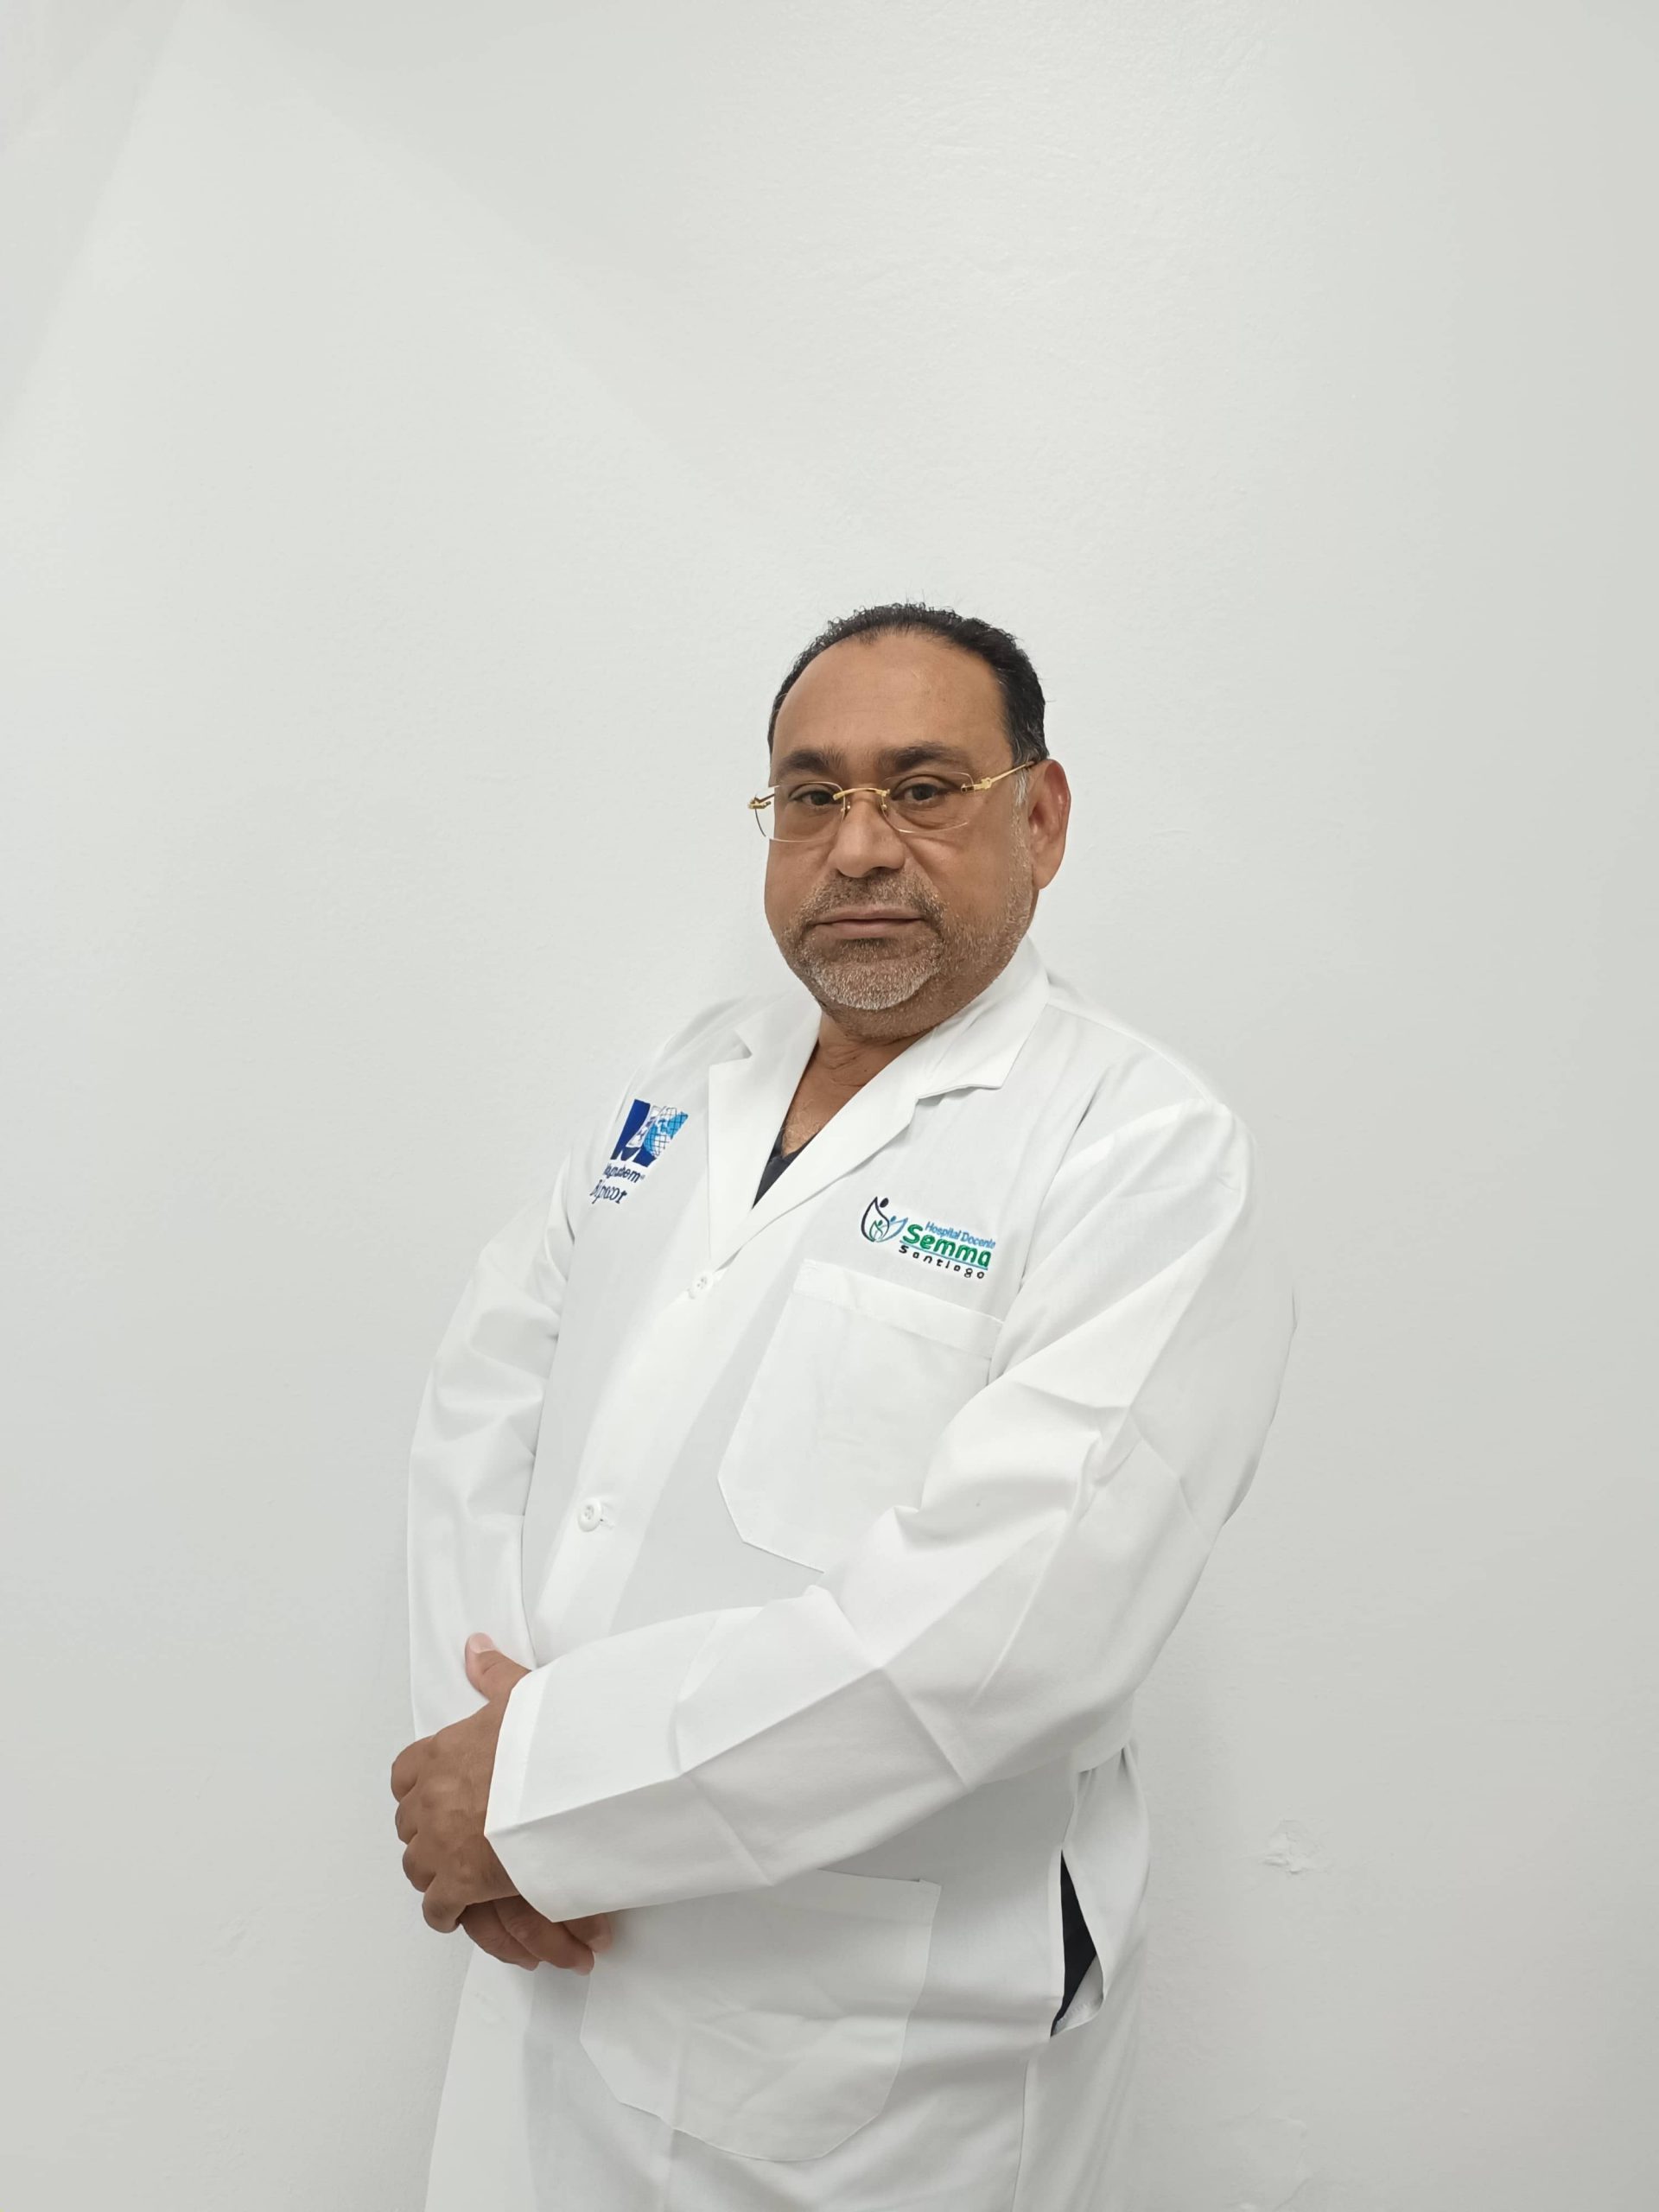 Dr. Domingo Colon